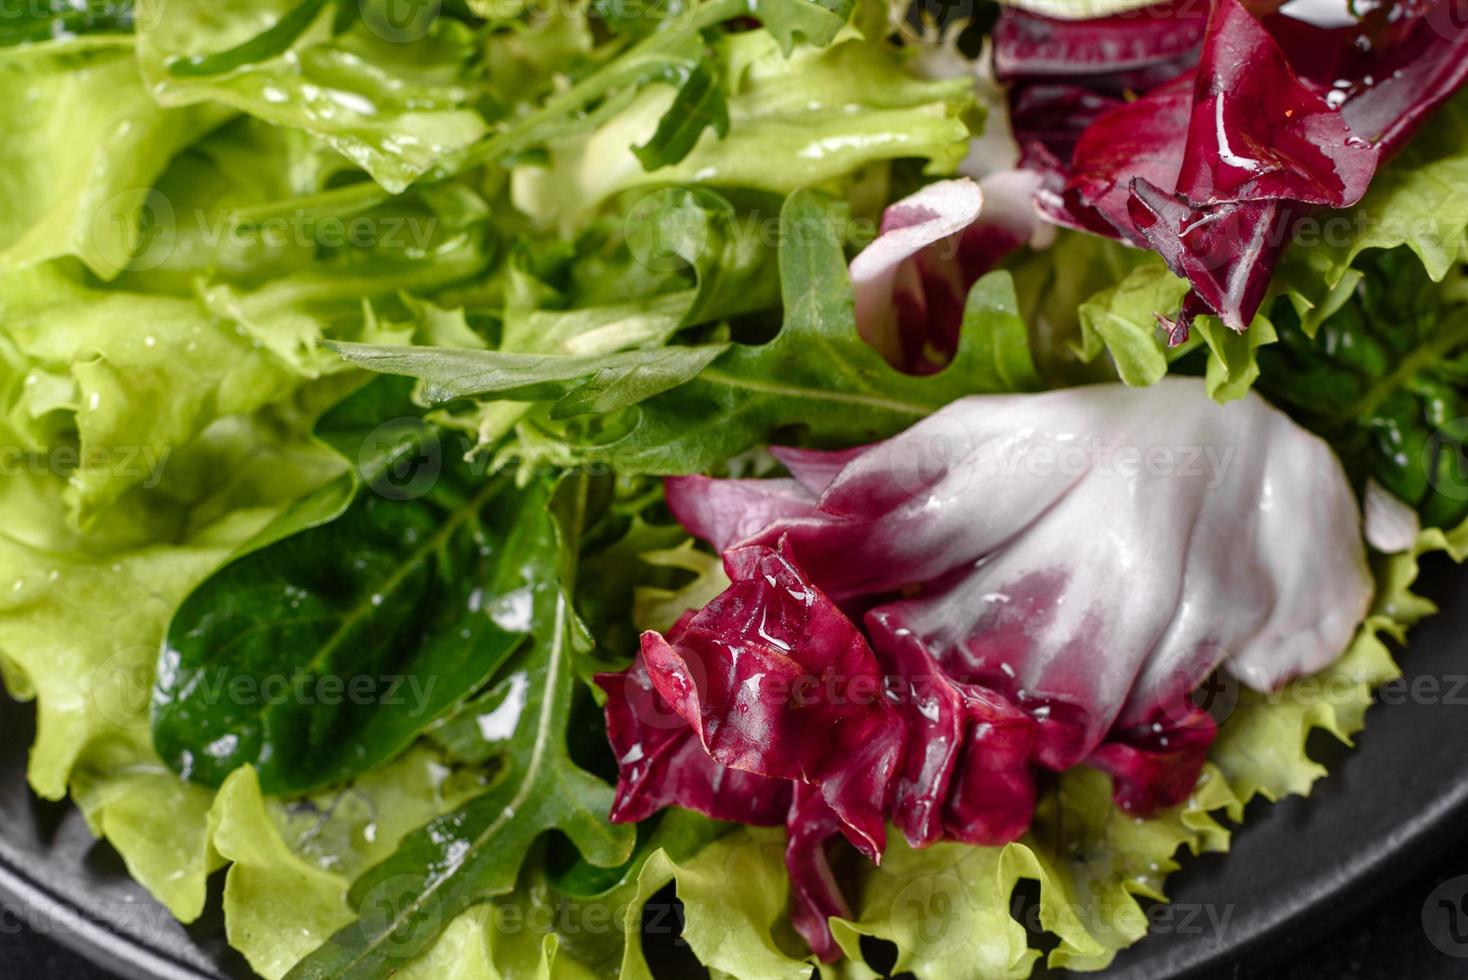 insalata vegetariana fresca e deliziosa di verdure tritate su un piatto foto